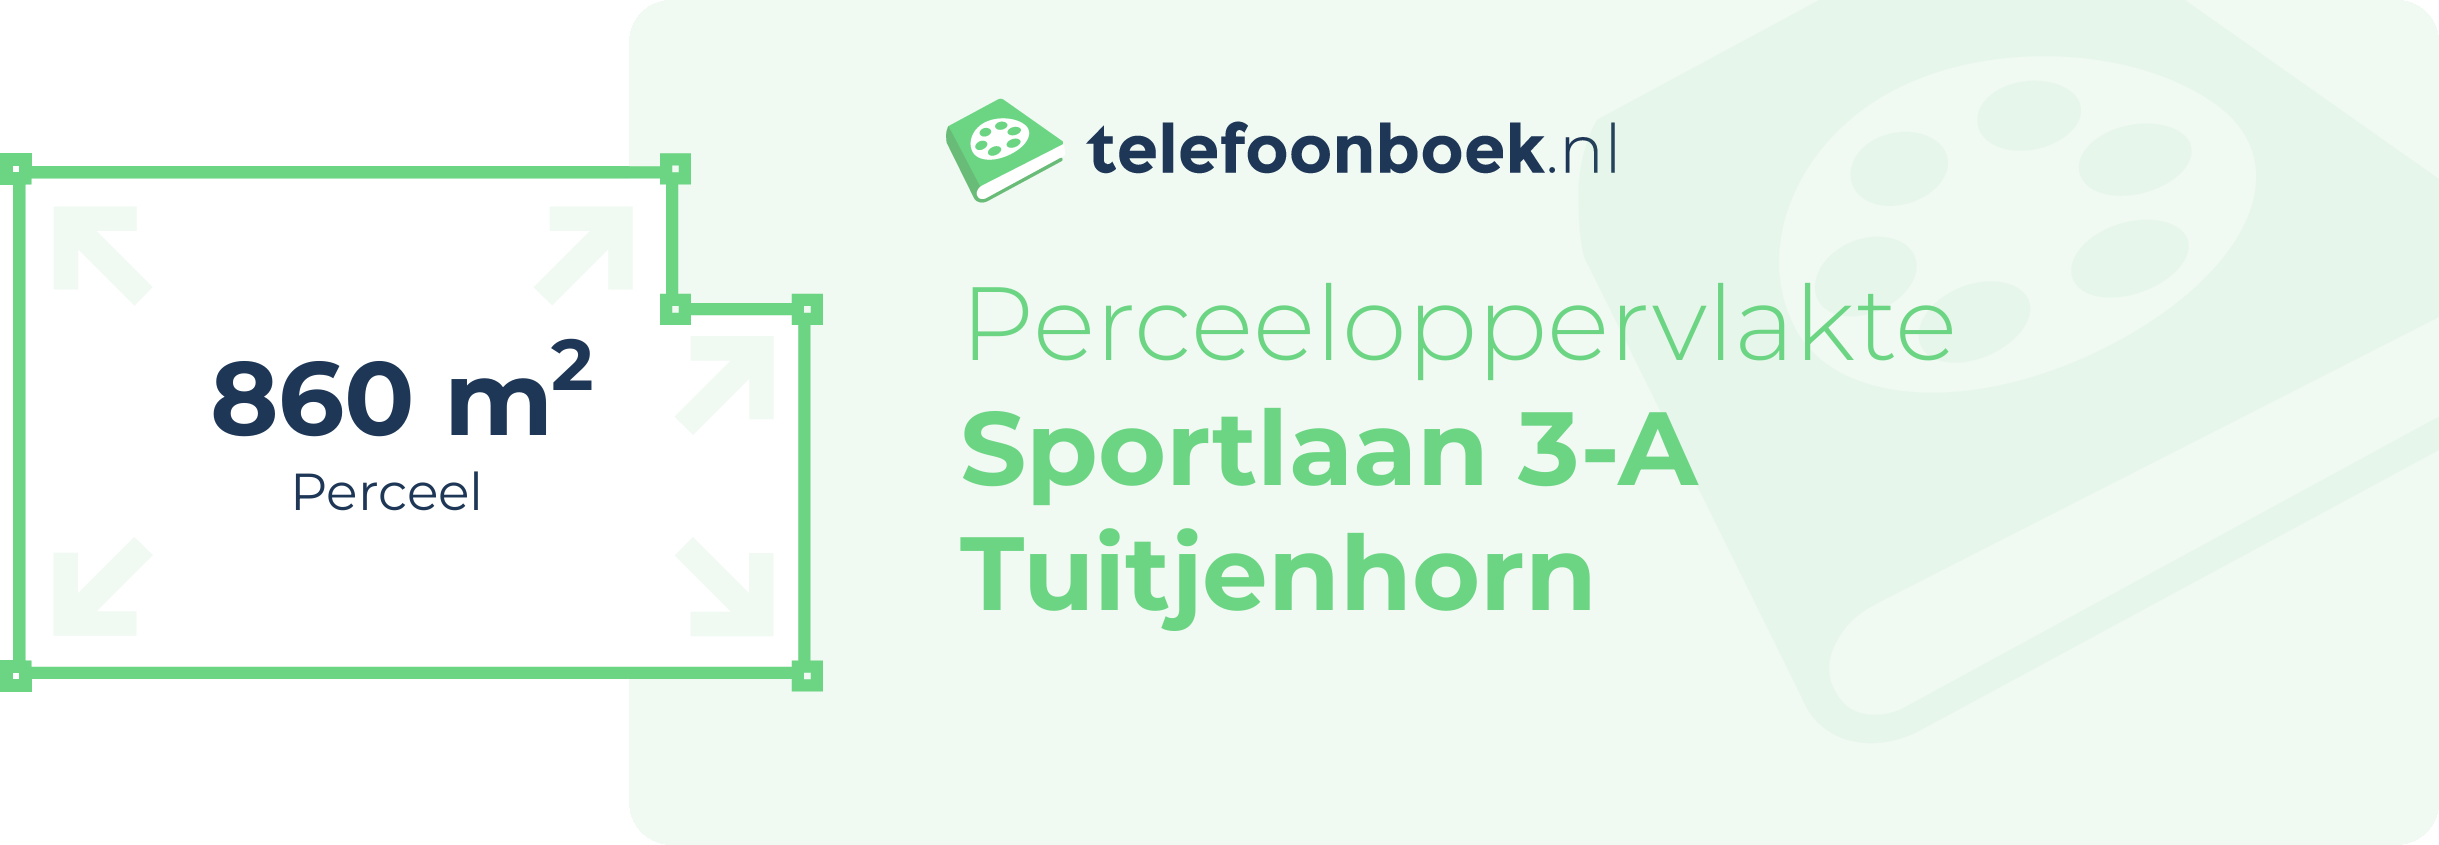 Perceeloppervlakte Sportlaan 3-A Tuitjenhorn